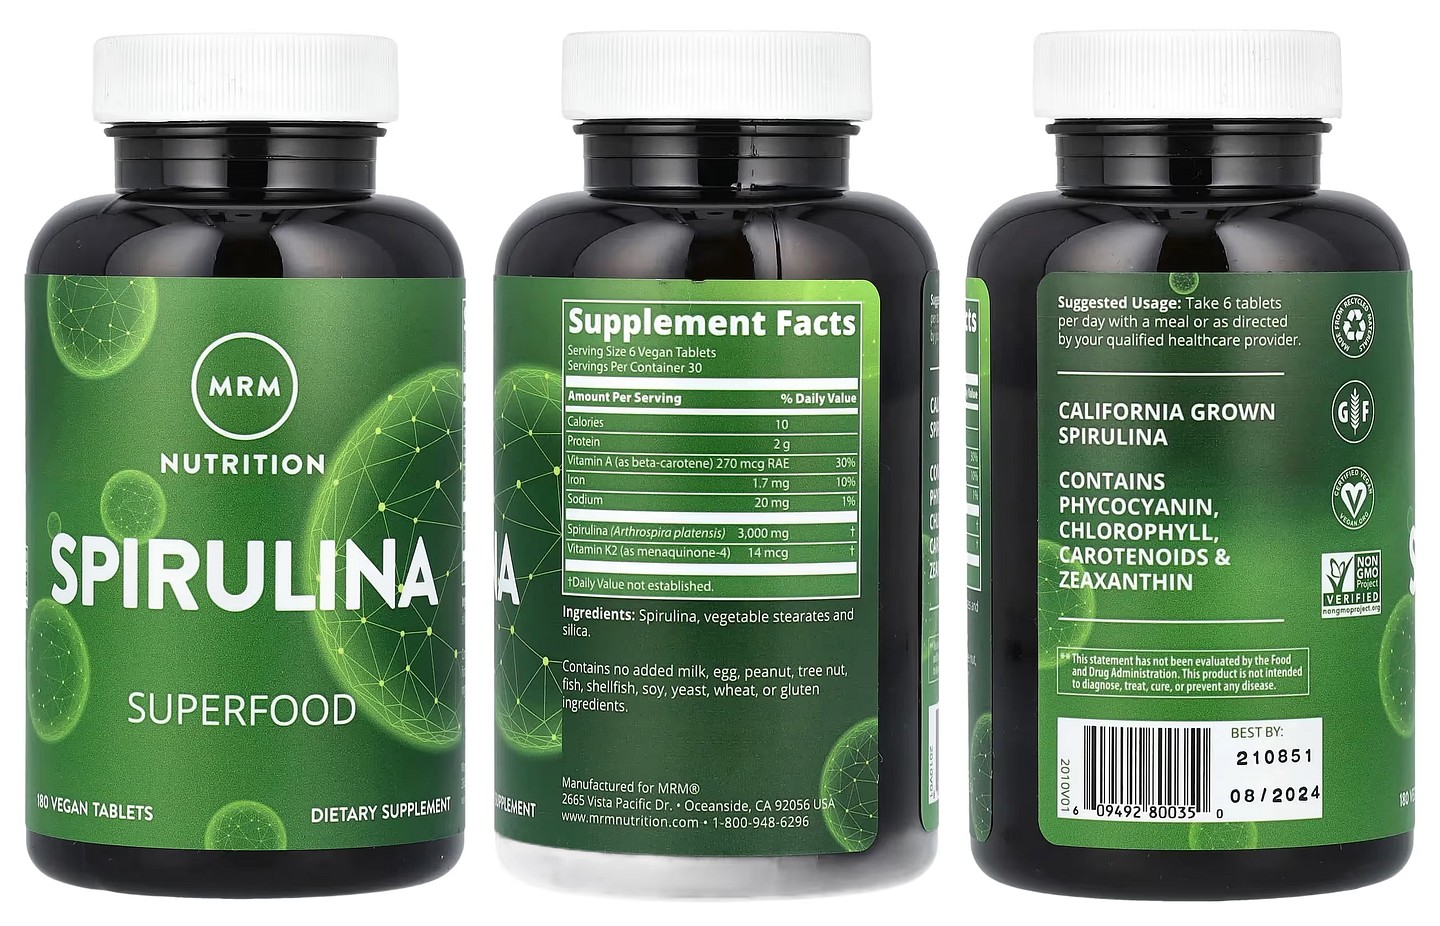 MRM Nutrition, Spirulina packaging